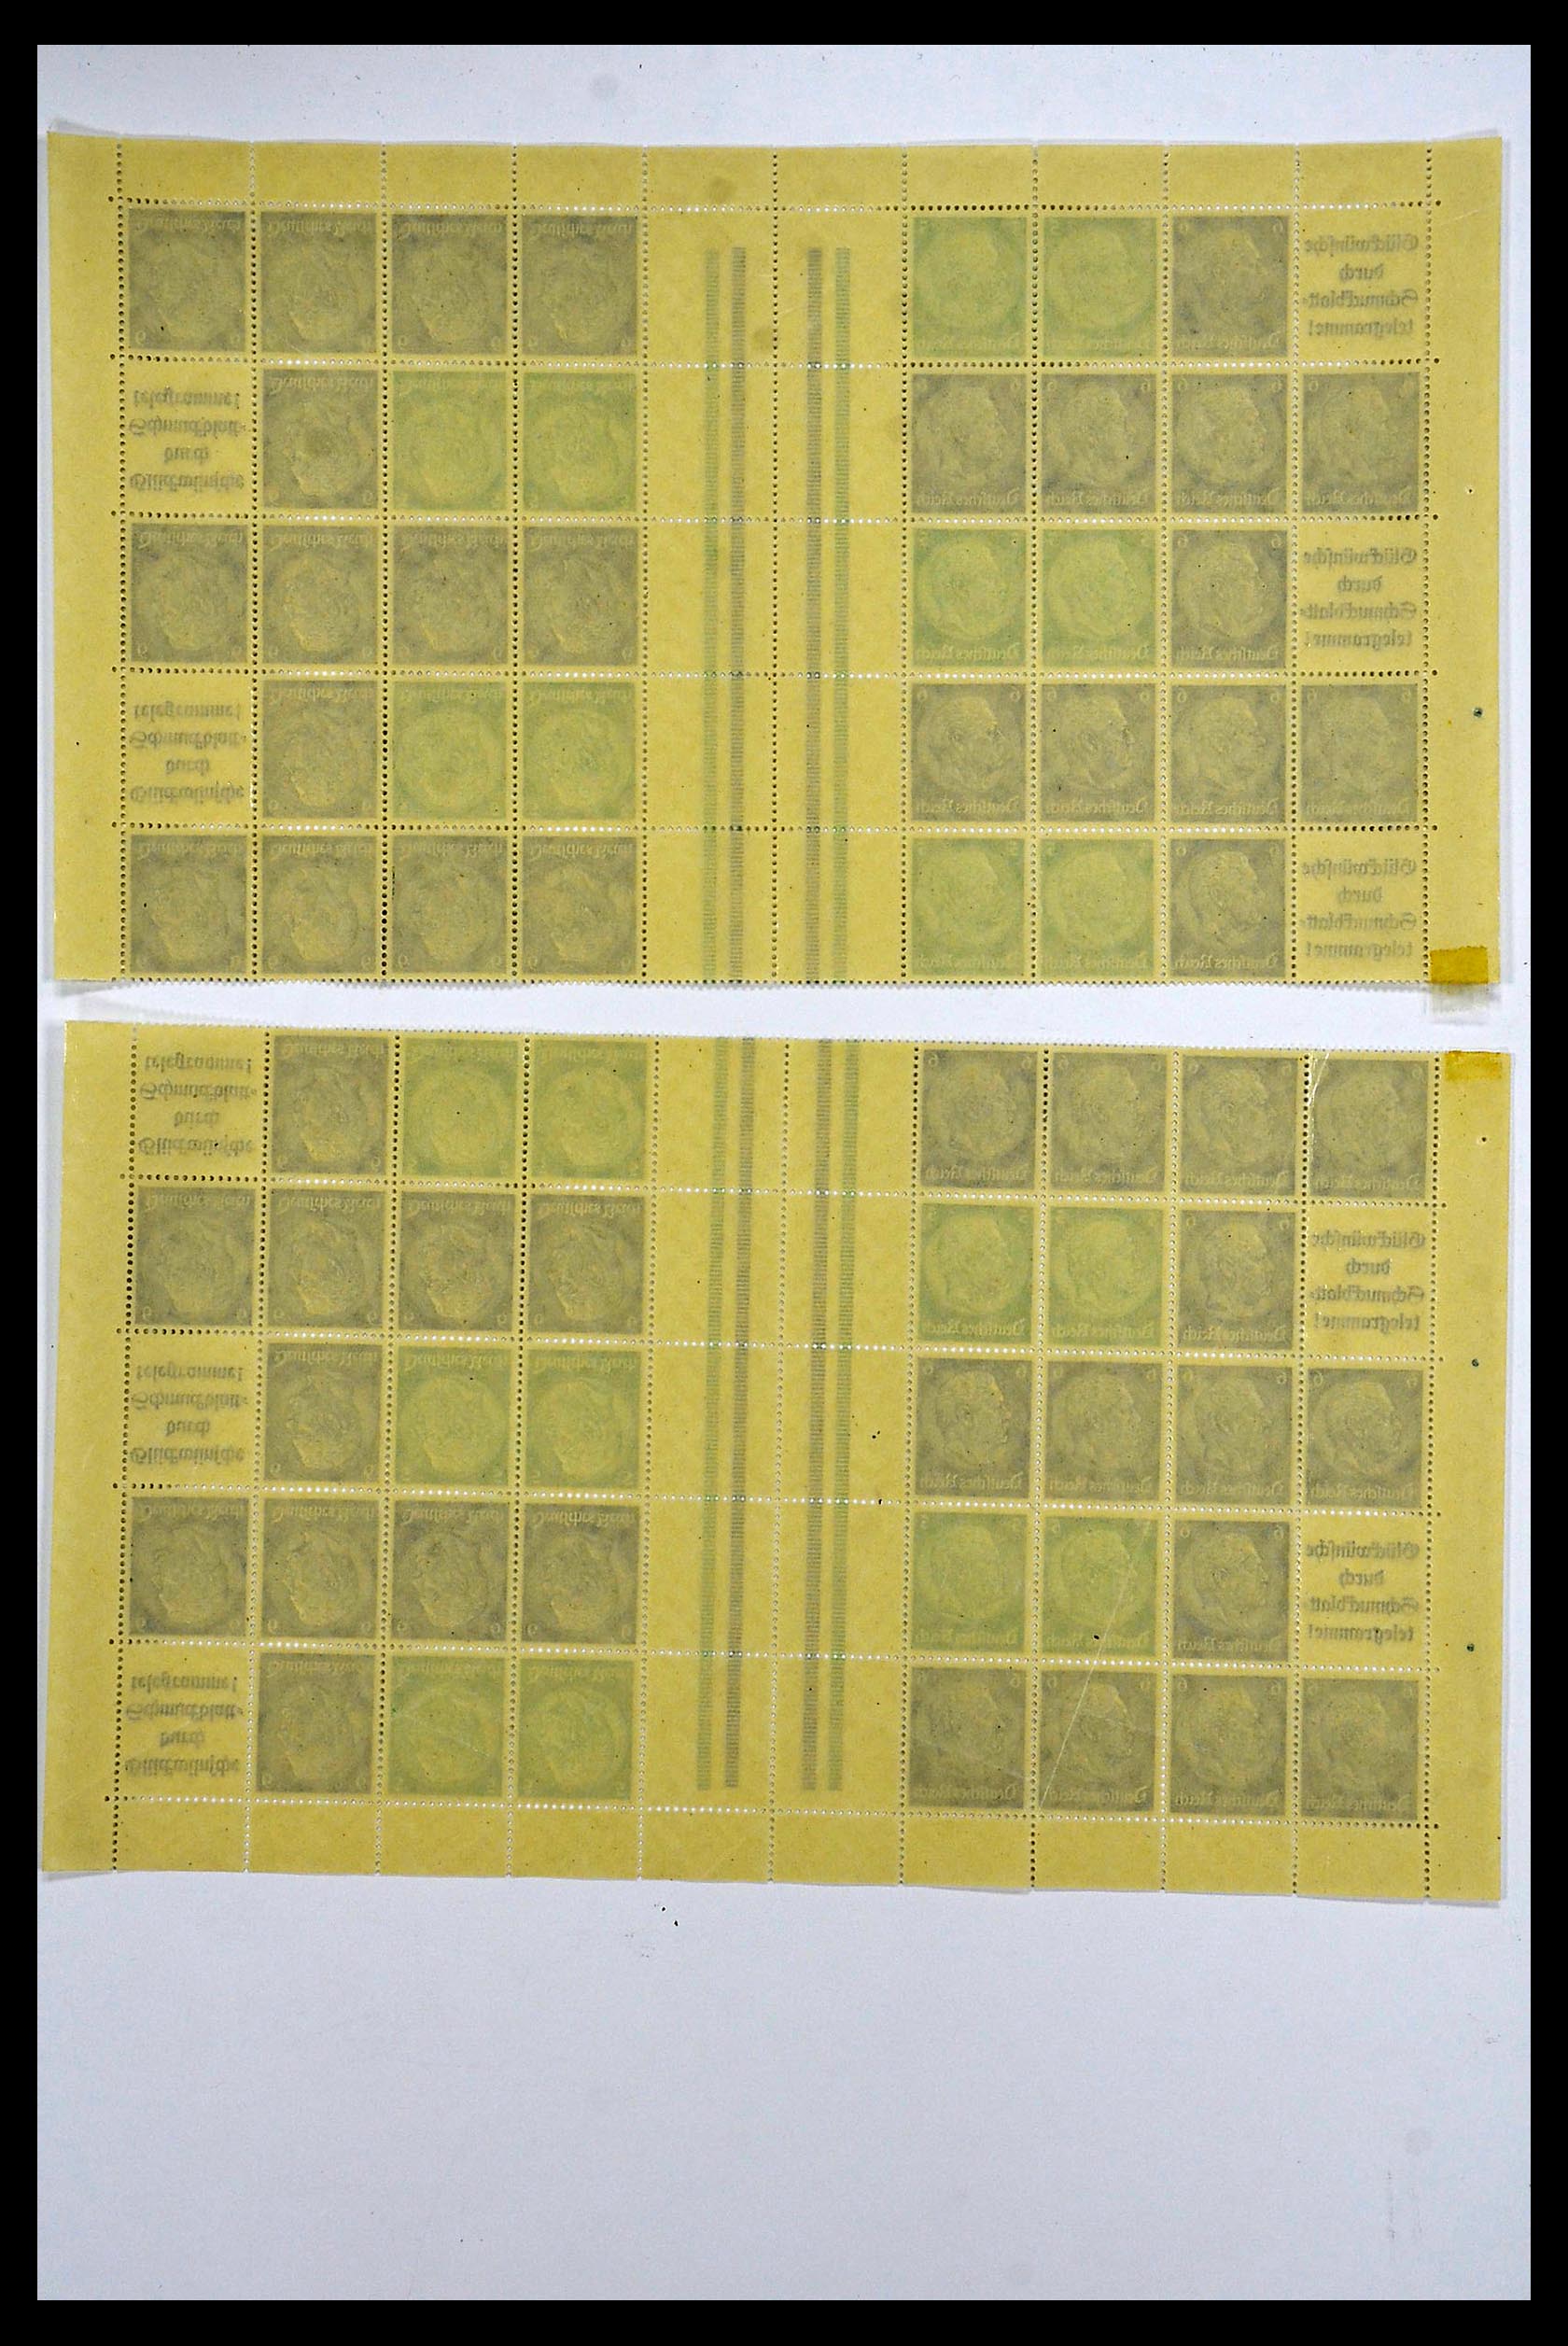 34164 050 - Stamp collection 34164 German Reich Markenheftchenbogen 1933-1942.